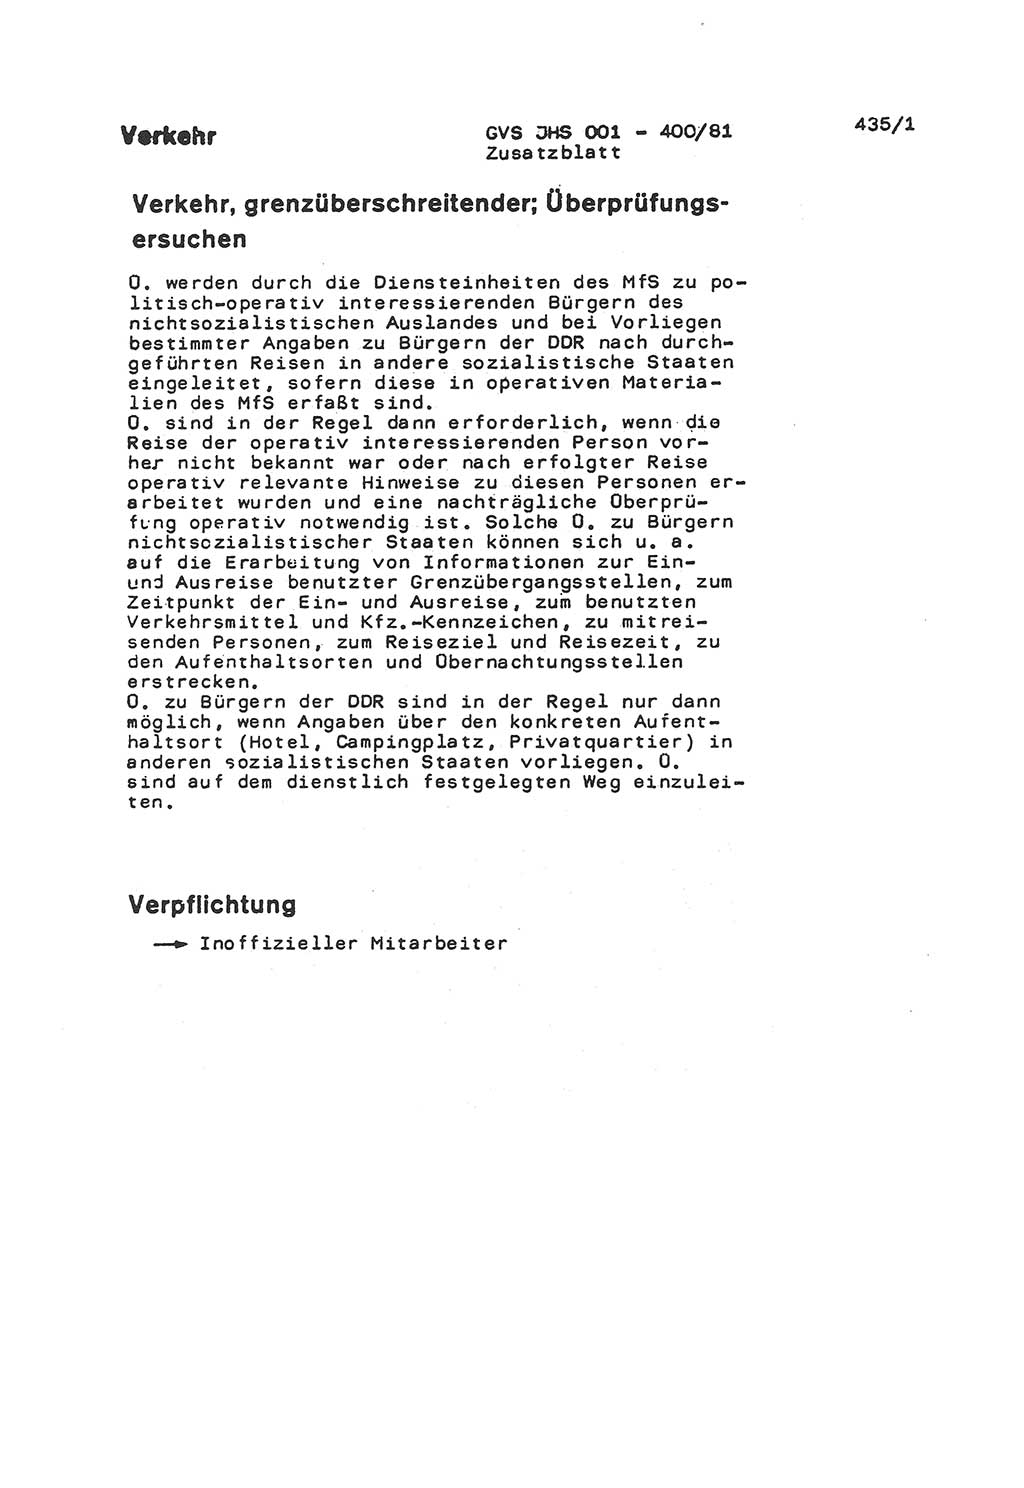 Wörterbuch der politisch-operativen Arbeit, Ministerium für Staatssicherheit (MfS) [Deutsche Demokratische Republik (DDR)], Juristische Hochschule (JHS), Geheime Verschlußsache (GVS) o001-400/81, Potsdam 1985, Blatt 435/1 (Wb. pol.-op. Arb. MfS DDR JHS GVS o001-400/81 1985, Bl. 435/1)